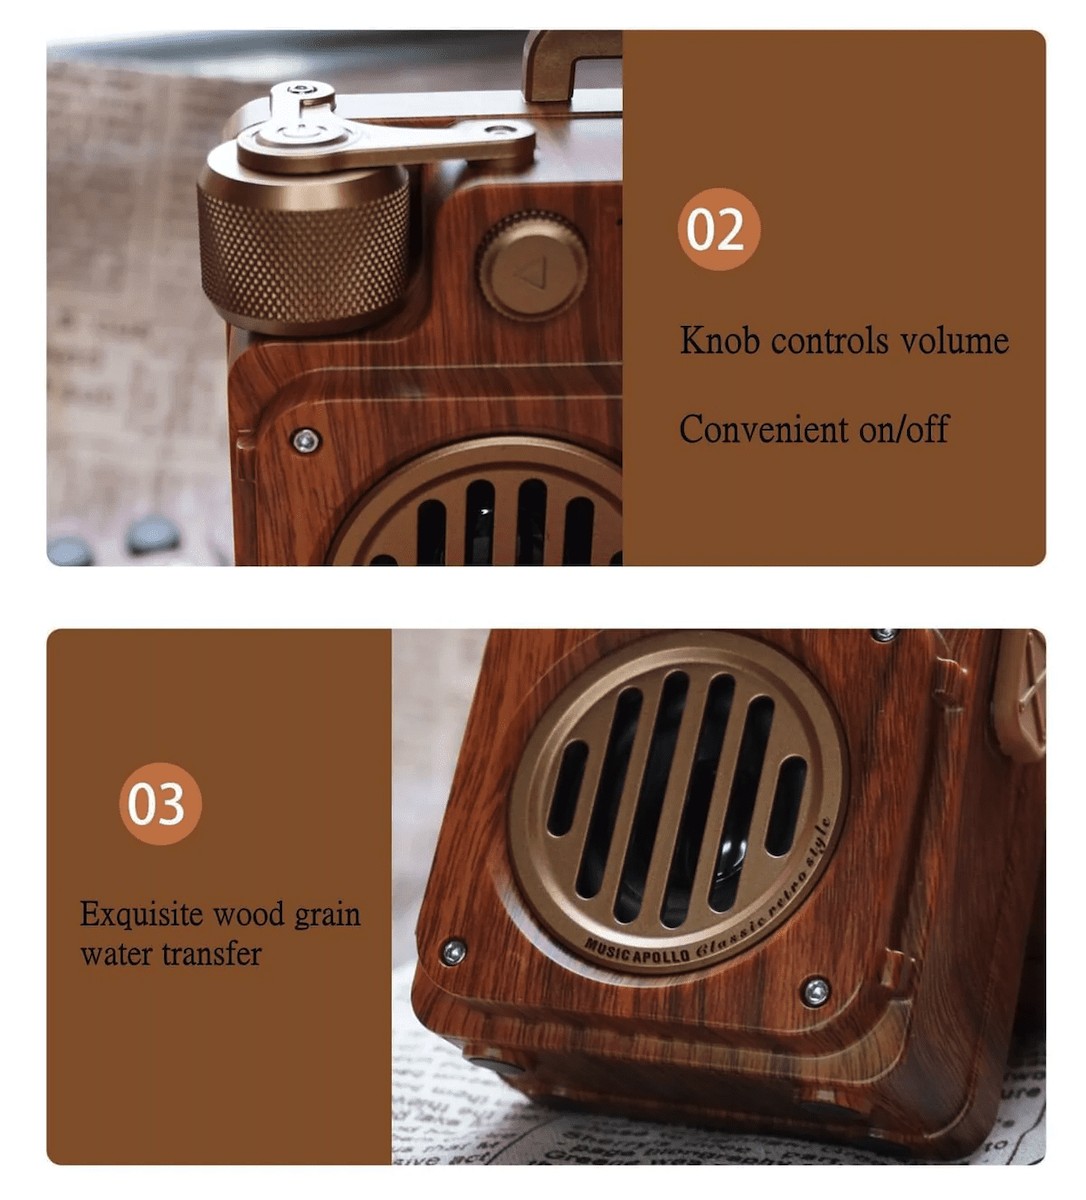 ヴィンテージラジオ AM/FM 木製 古い レトロ ヴィンテージ スタイル